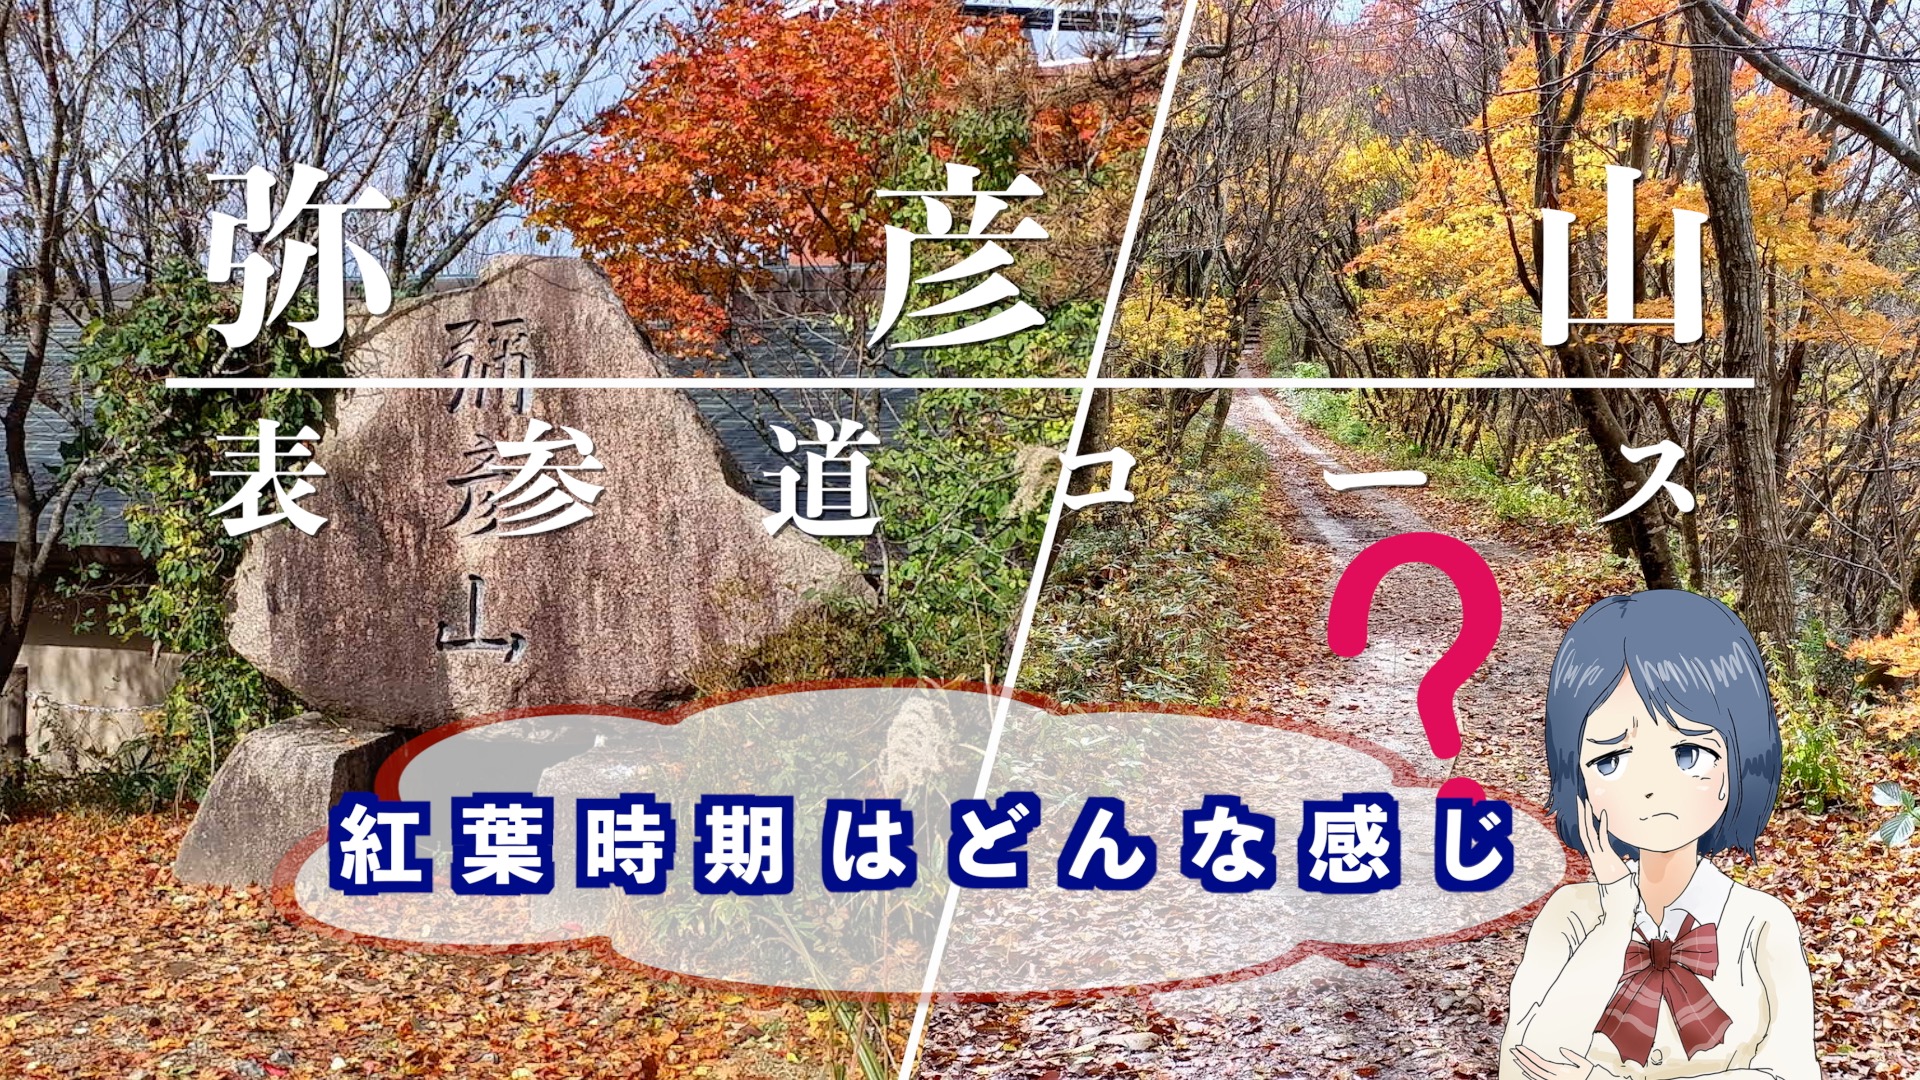 『紅葉の弥彦山』のアイキャッチ画像